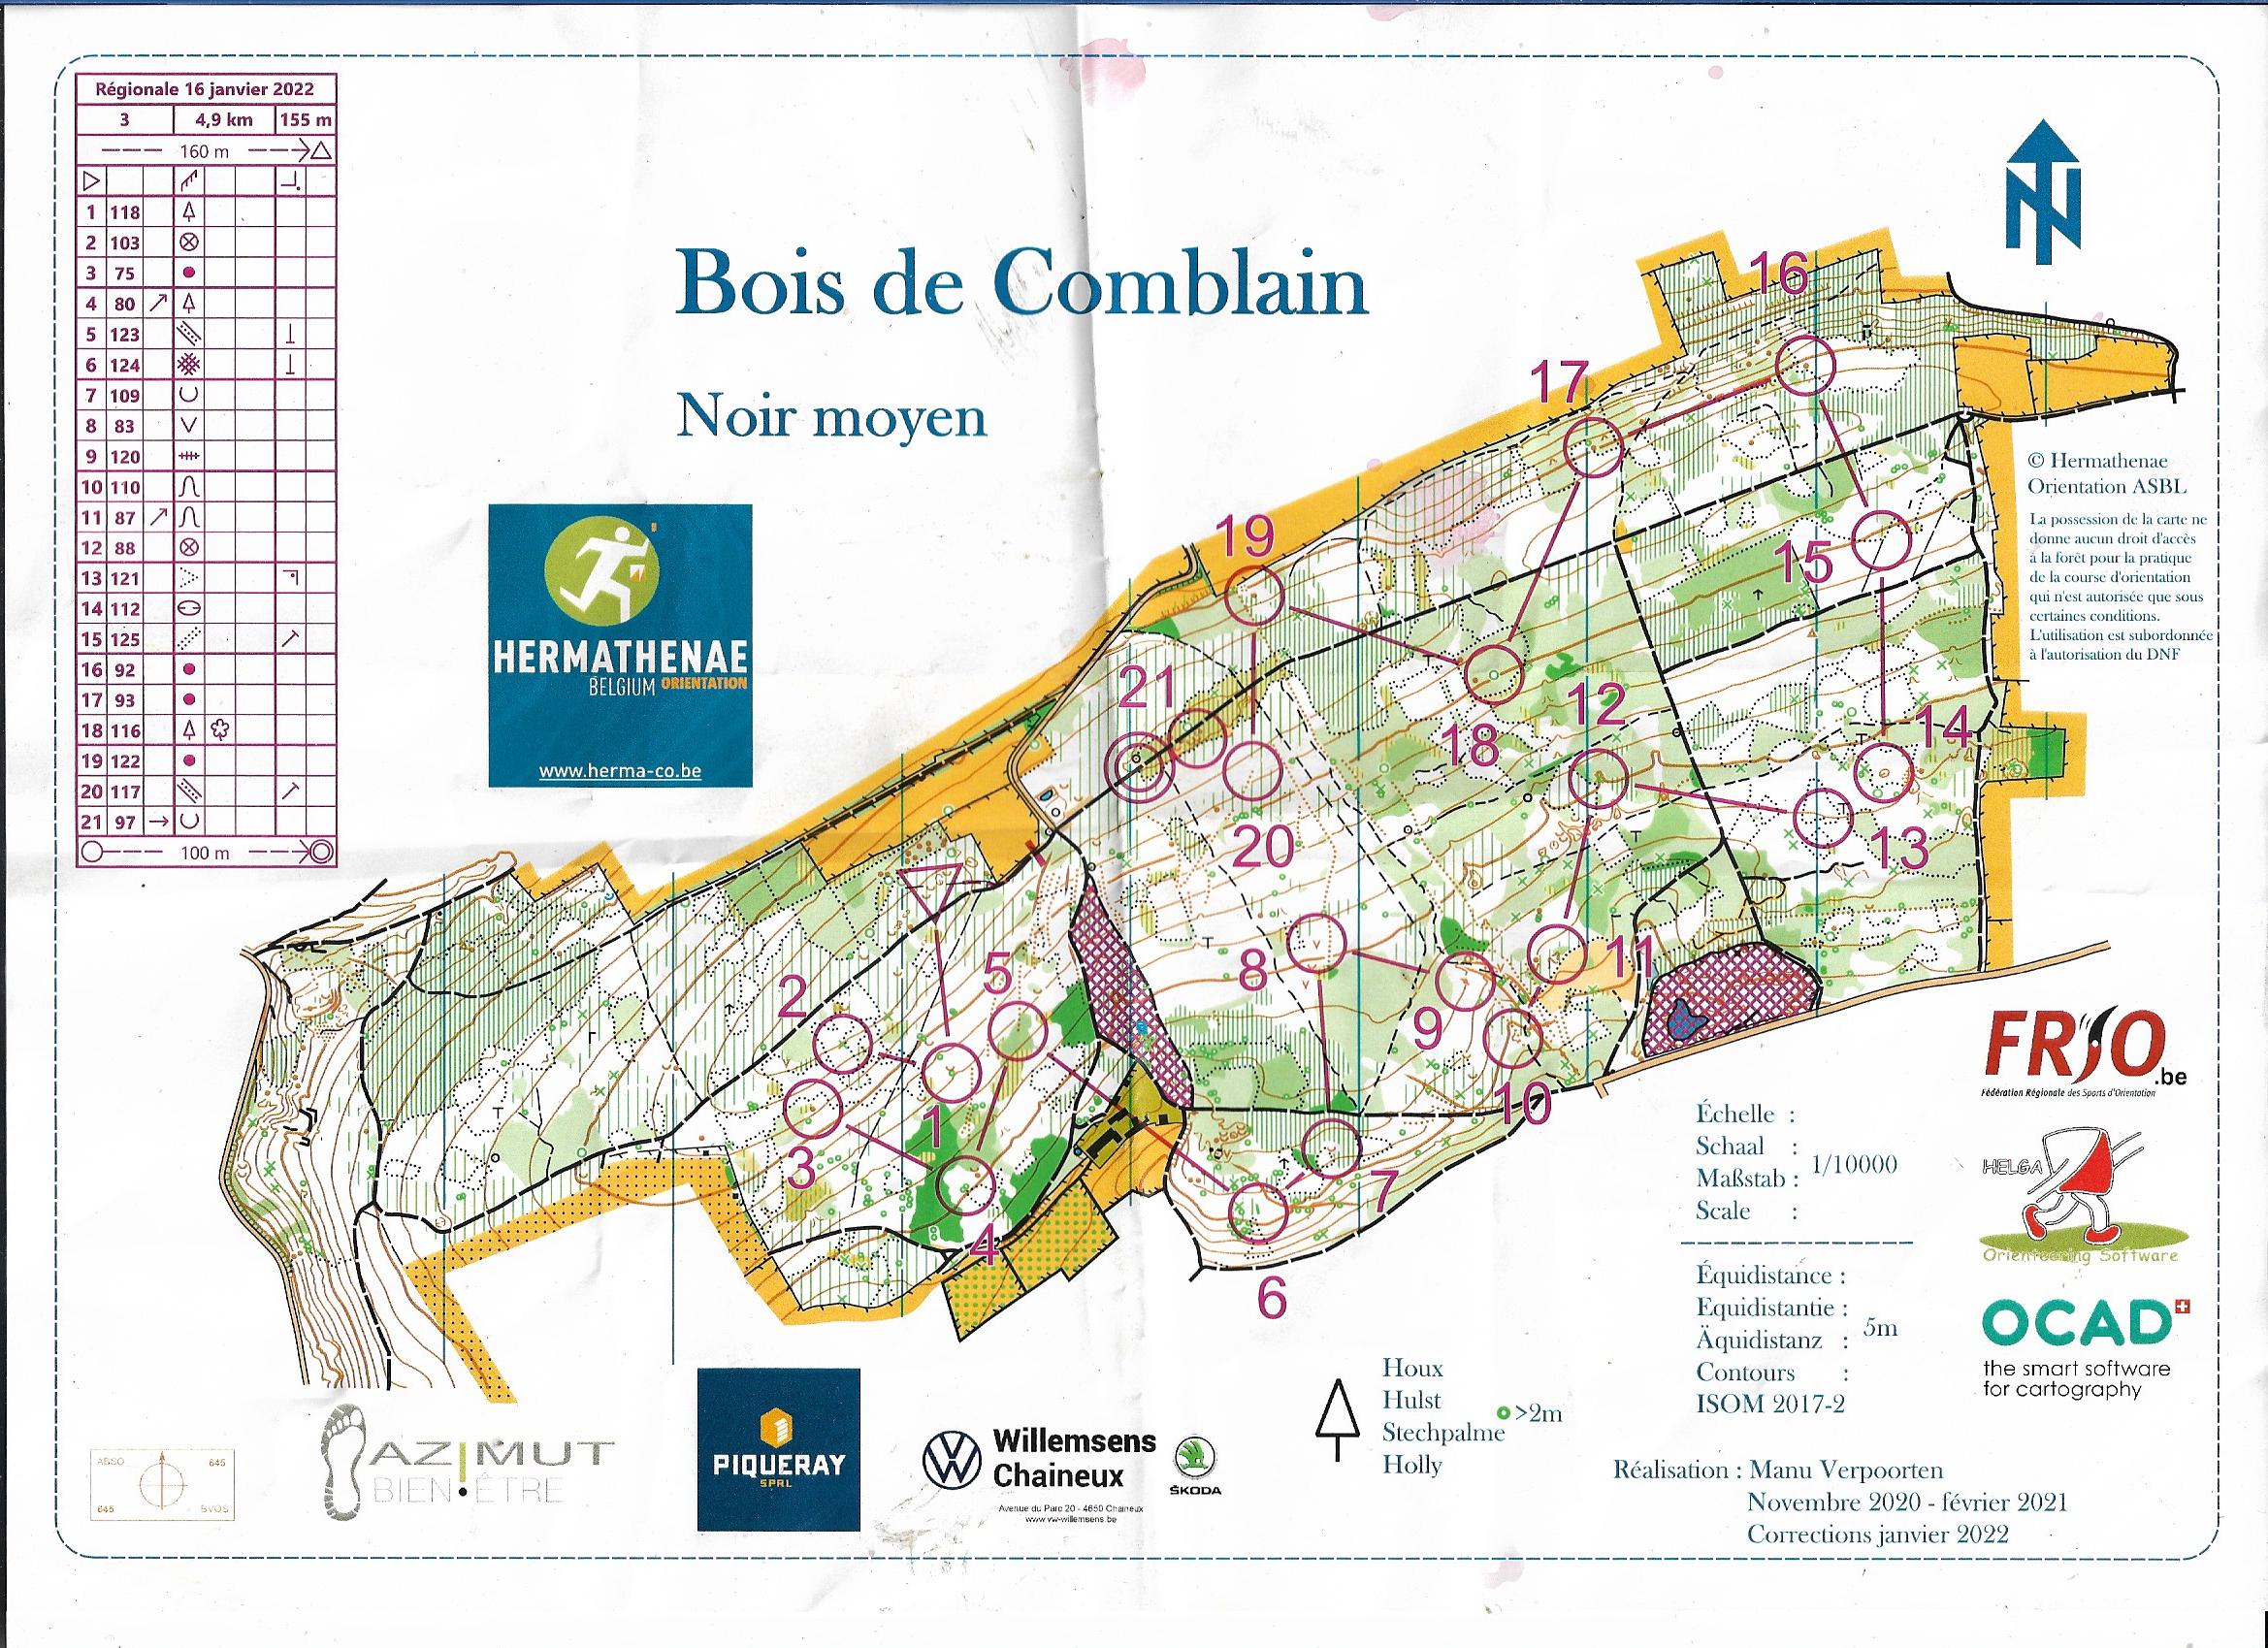 Bois de Comblain (16.01.2022)